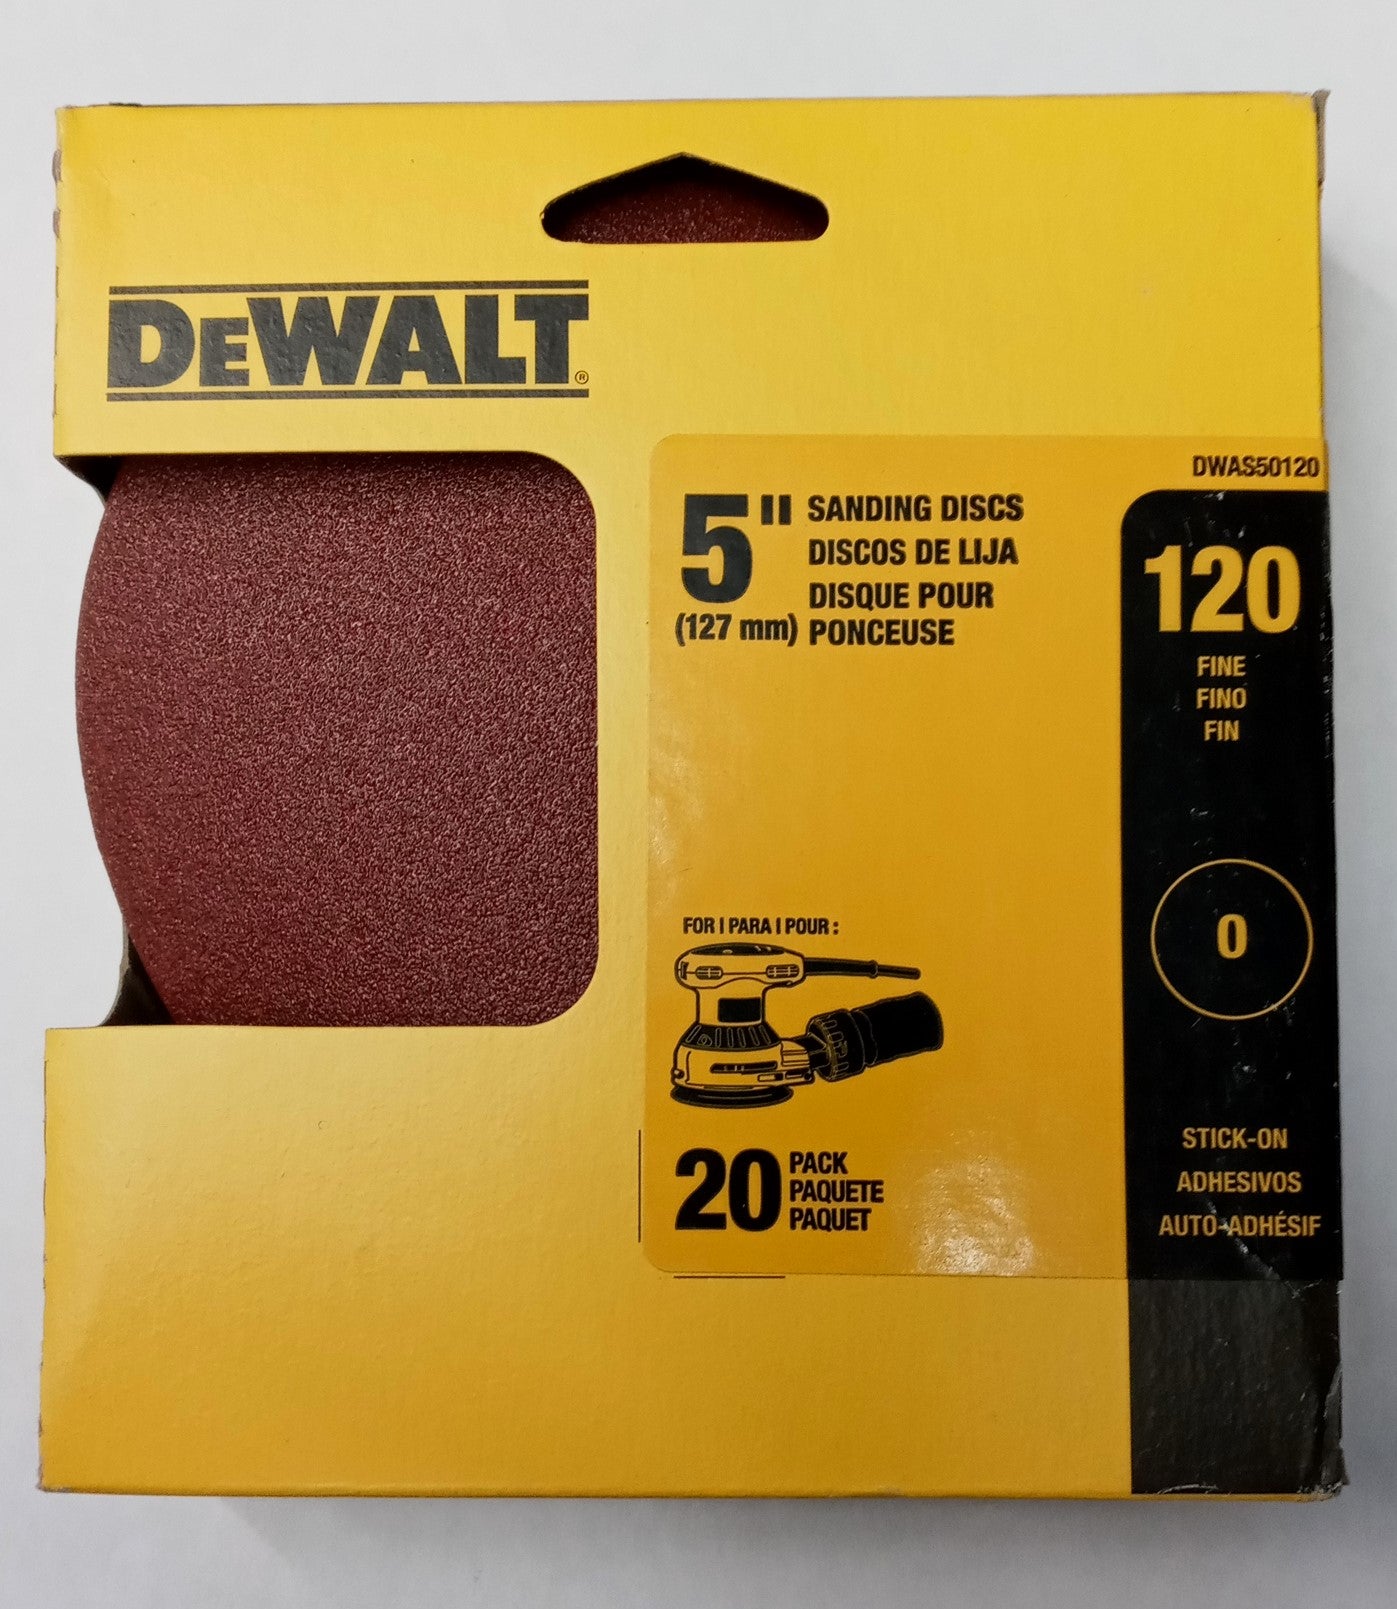 Dewalt DWAS50120 5" x 120 Grit No Hole Stick-On Sanding Discs 20pk